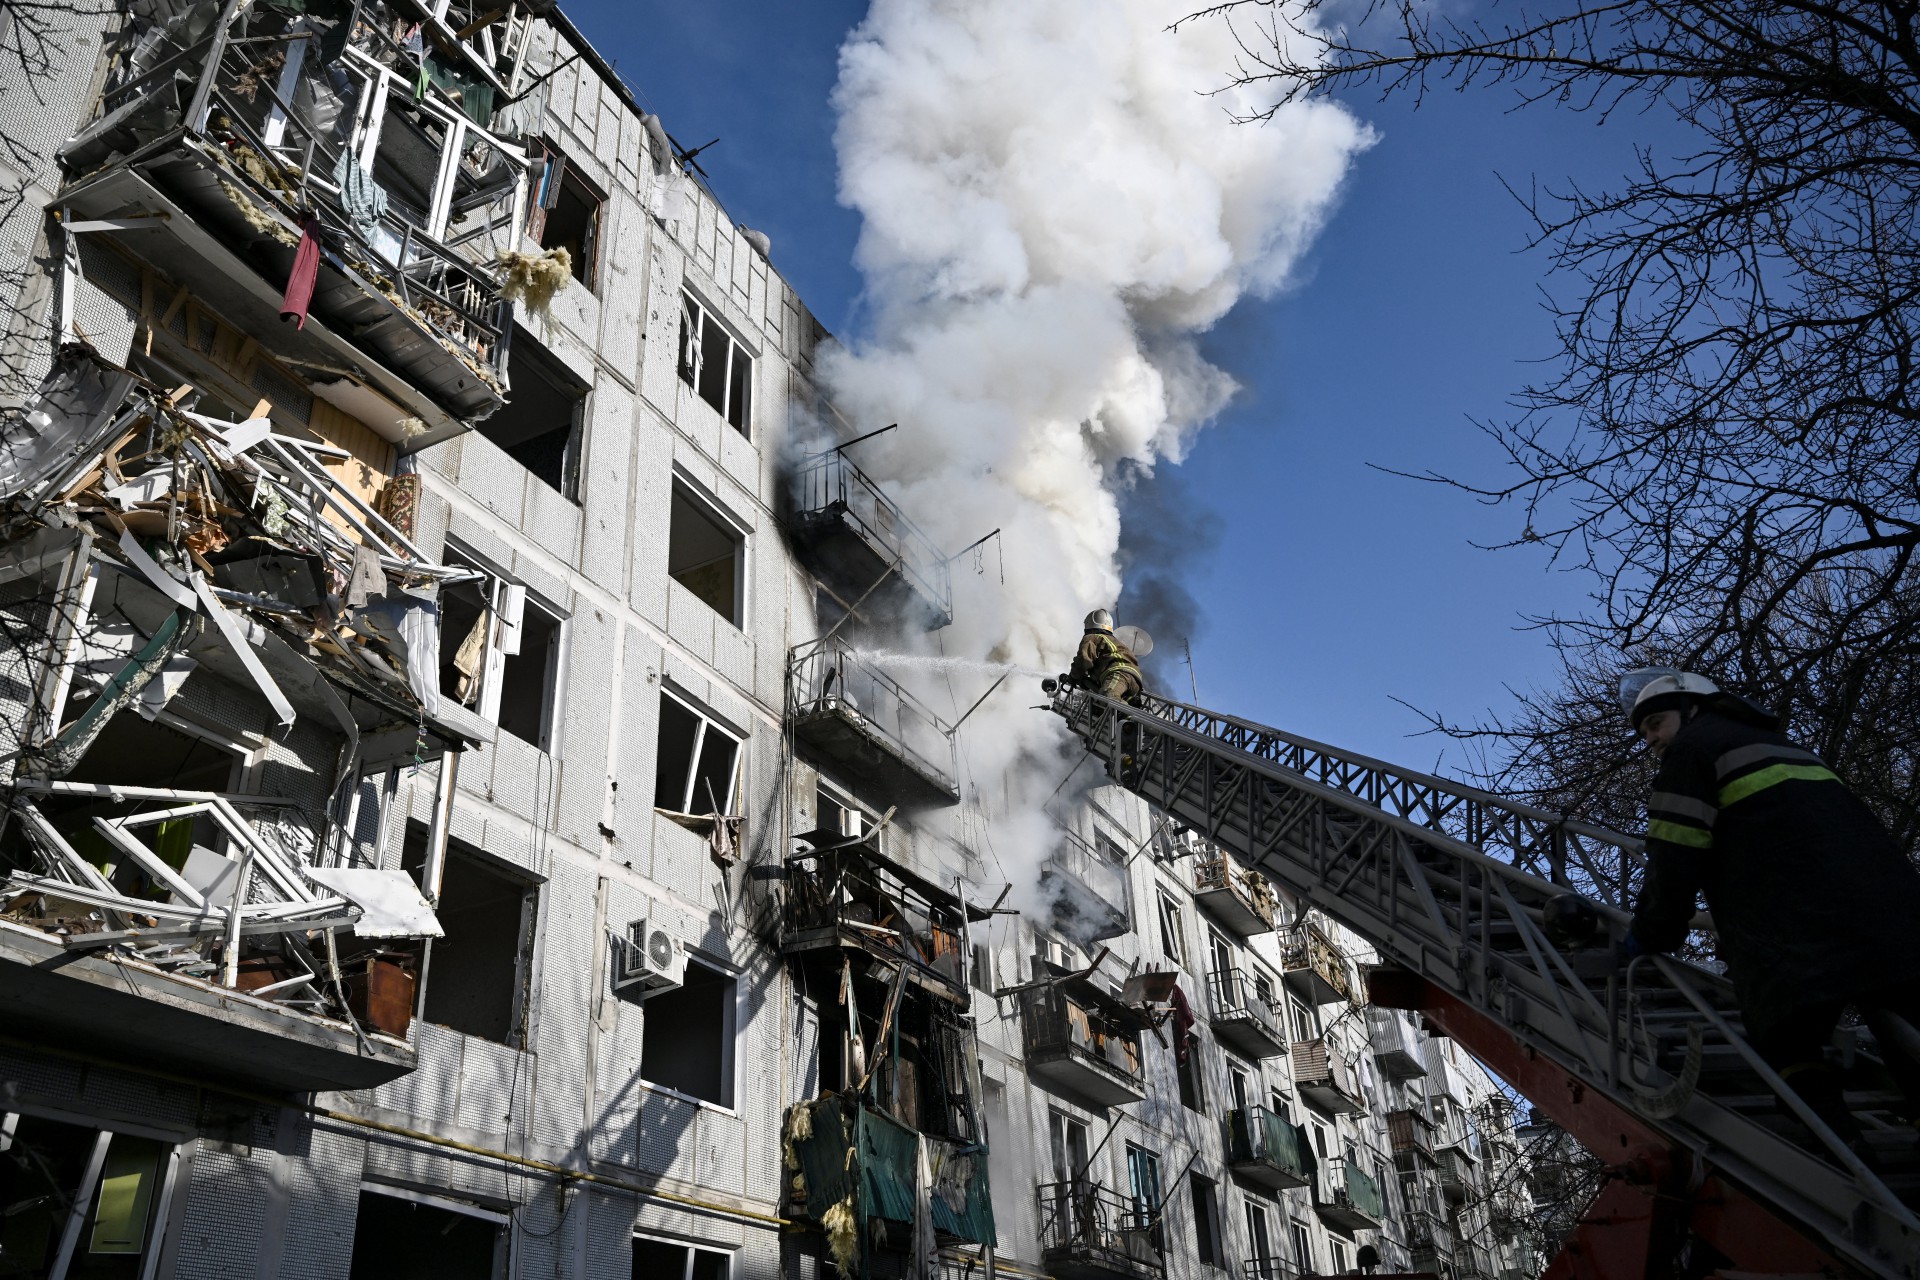 Bombeiros trabalham em um incêndio em um prédio após bombardeios na cidade de Chuguiv, no leste da Ucrânia, em 24 de fevereiro de 2022, enquanto as forças armadas russas tentam invadir a Ucrânia de várias direções.